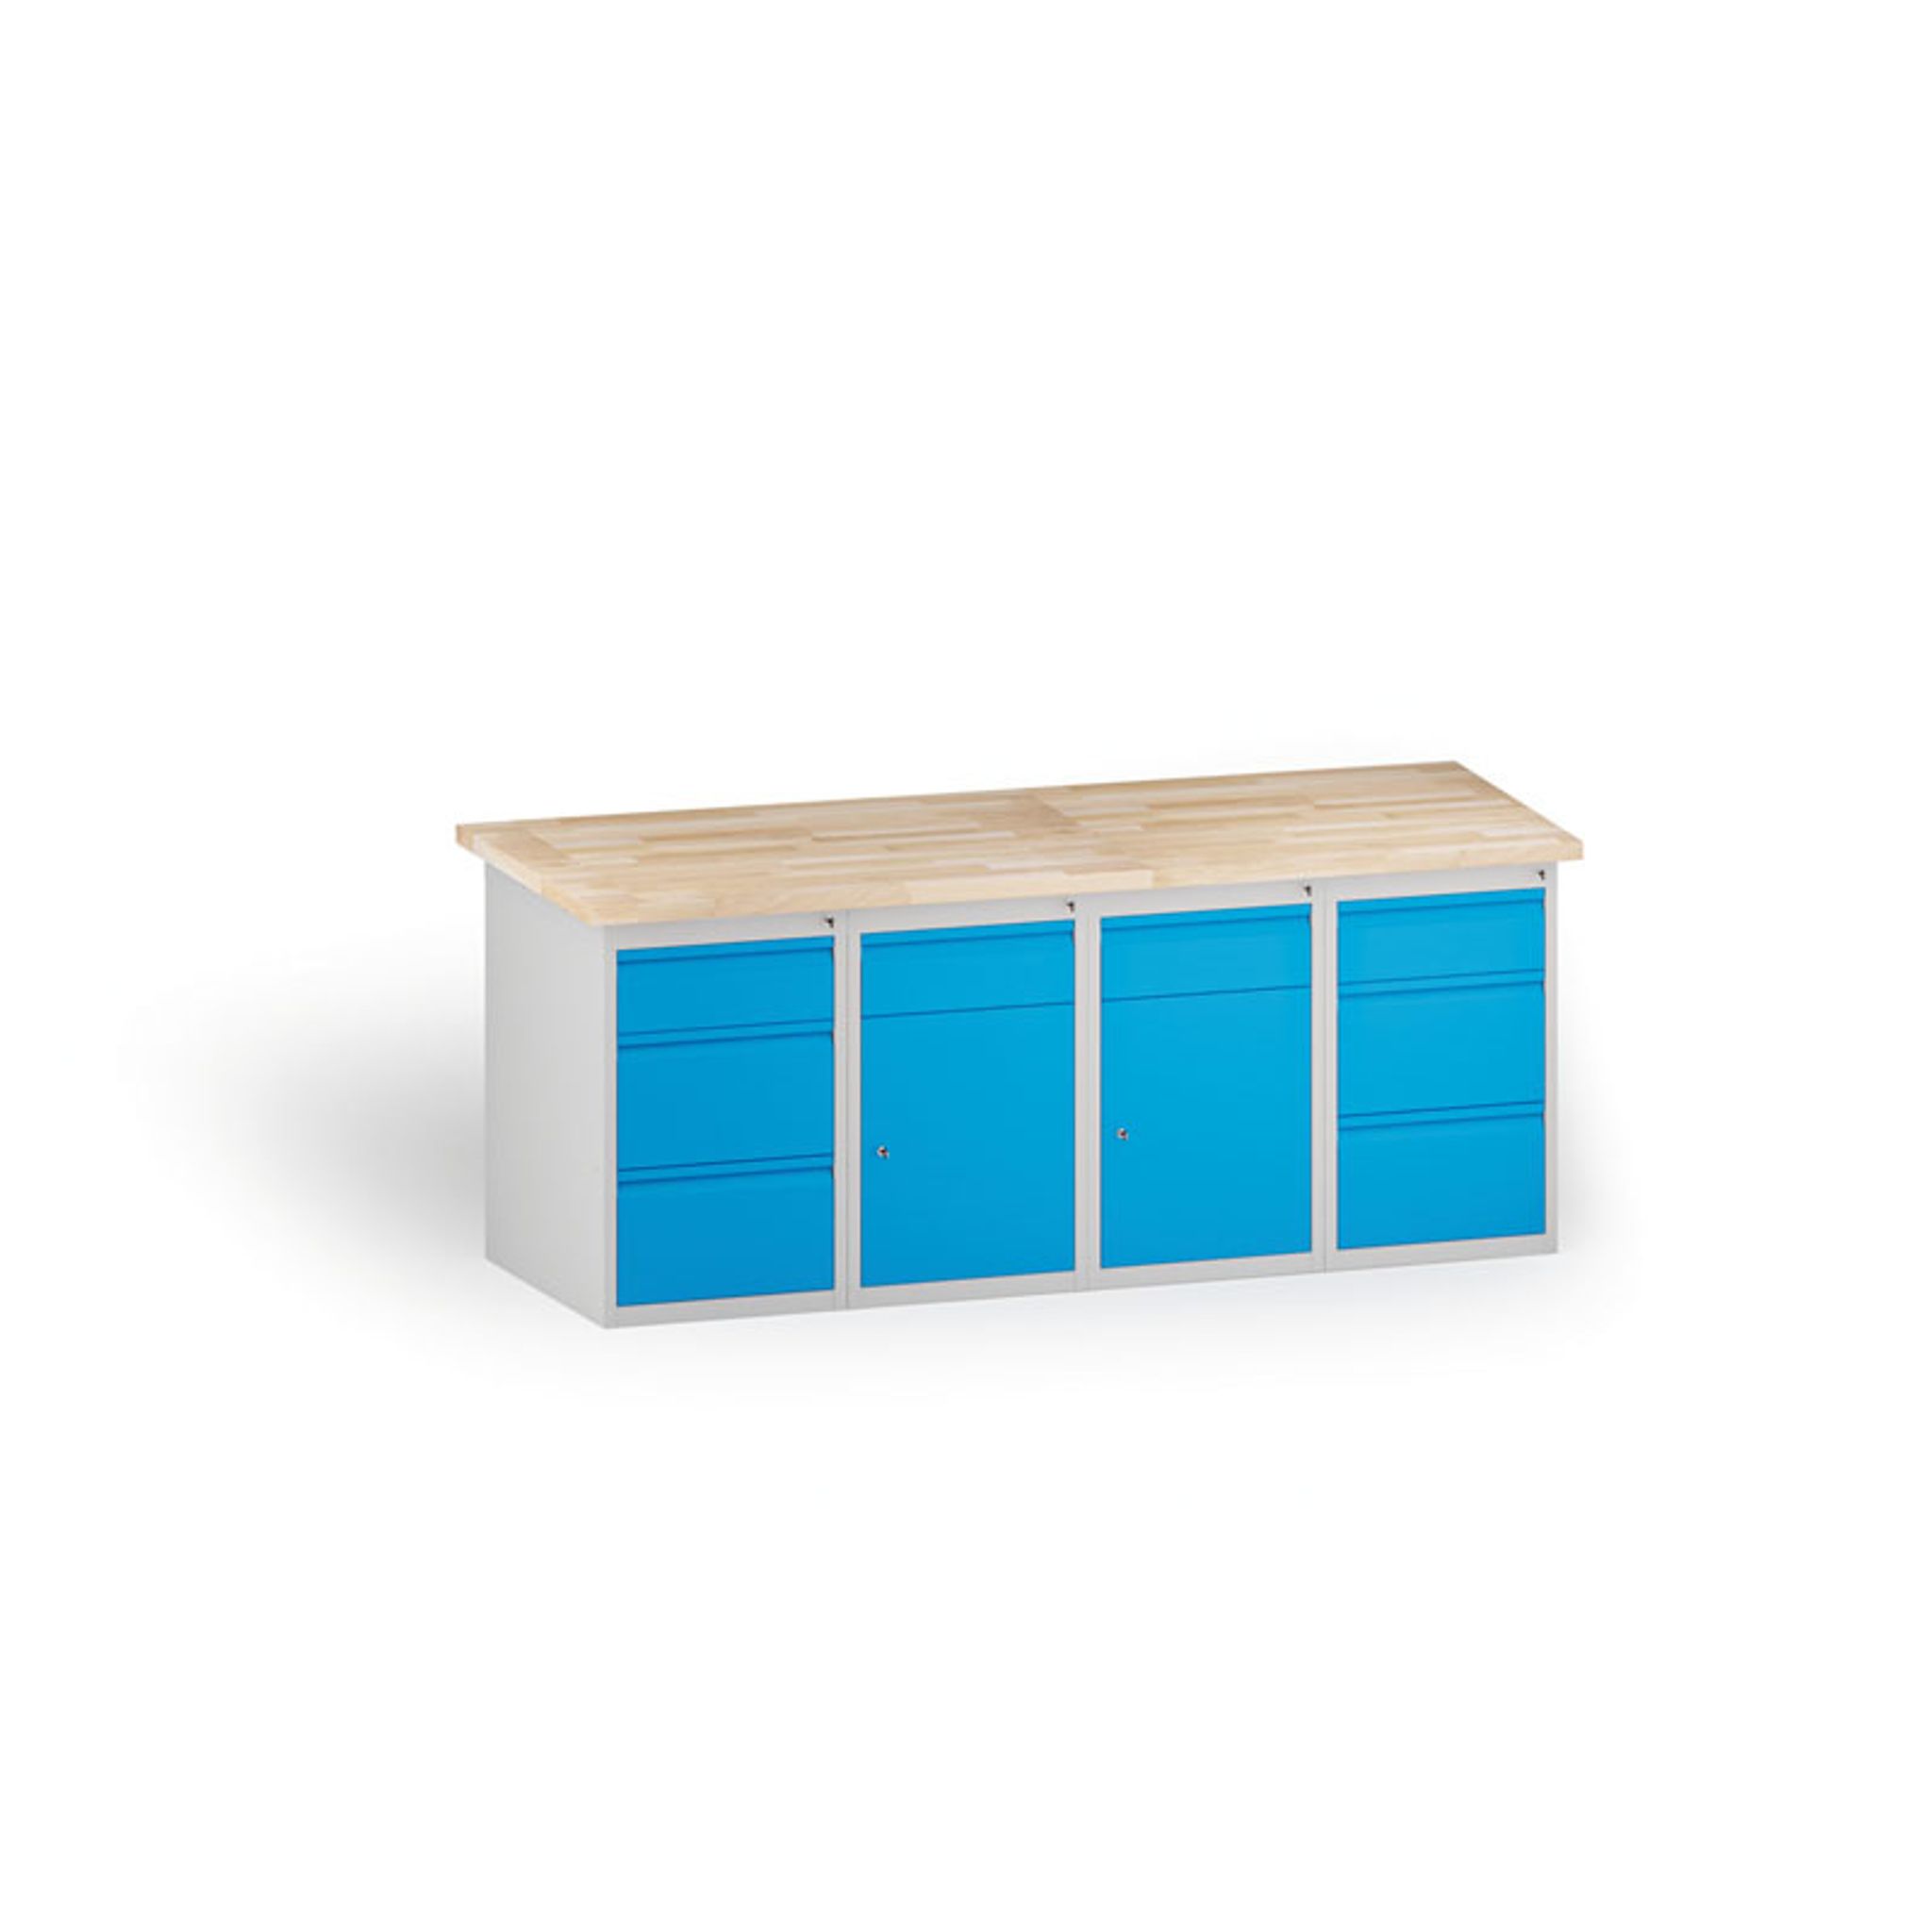 Stół warsztatowy KOVONA, 2 szafki wiszące z szufladą i 6 szuflad na narzędzia, blat z drewna bukowego, 2000 mm